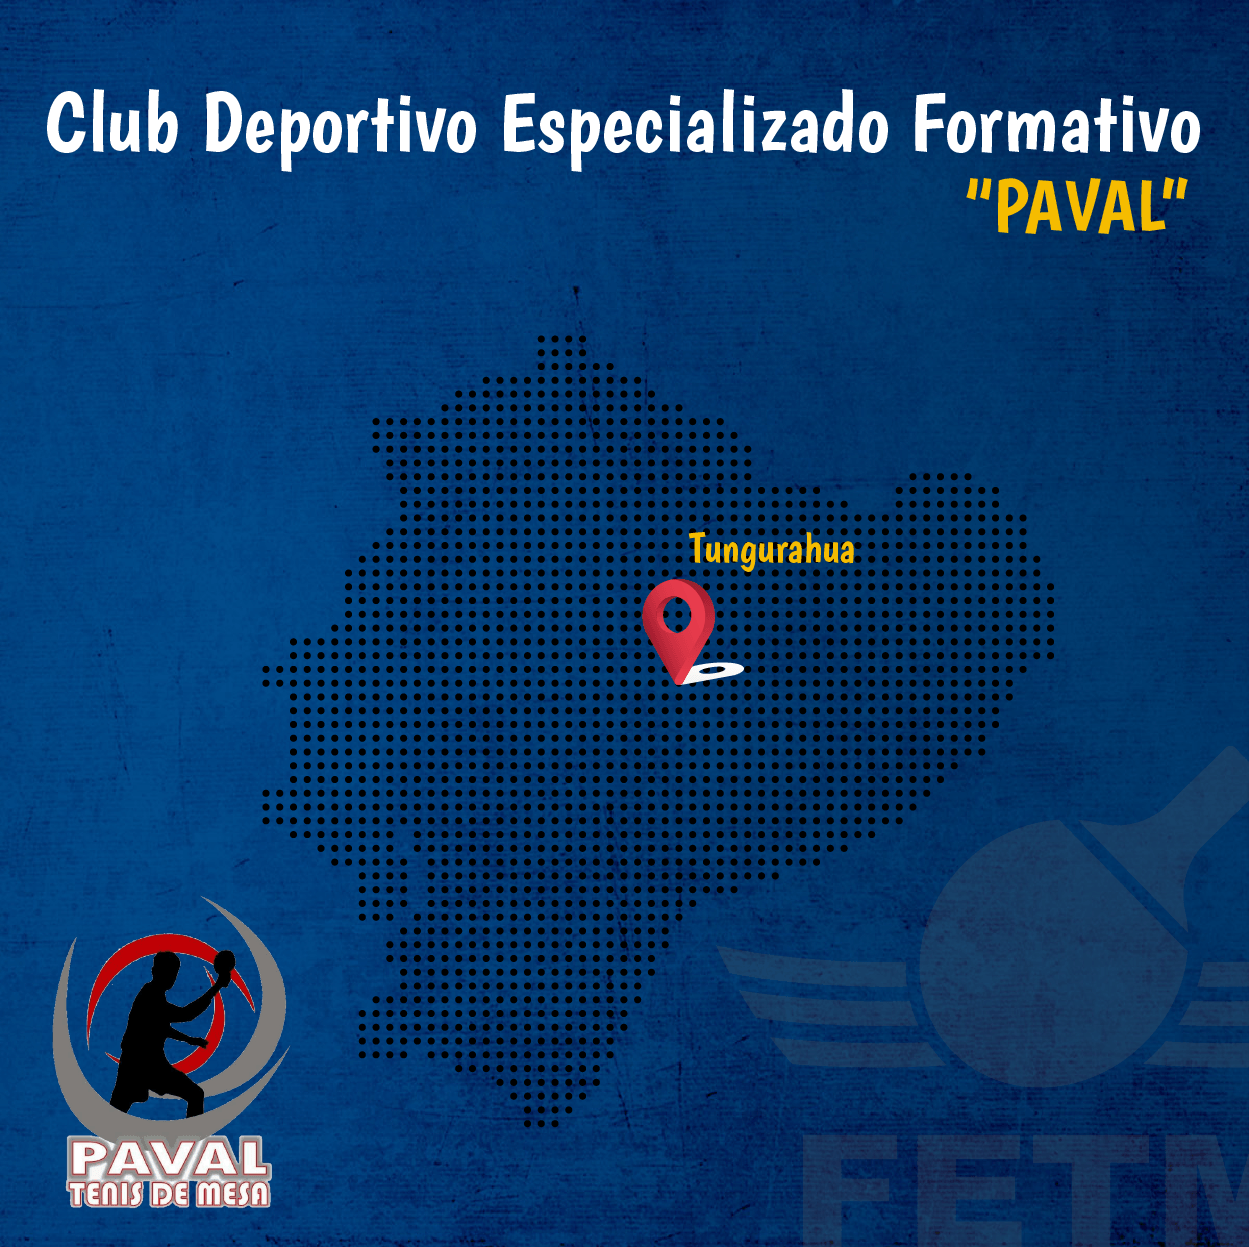 CLUB DEPORTIVO FORMATIVO ESPECIALIZADO DE TENIS DE MESA “PAVAL”